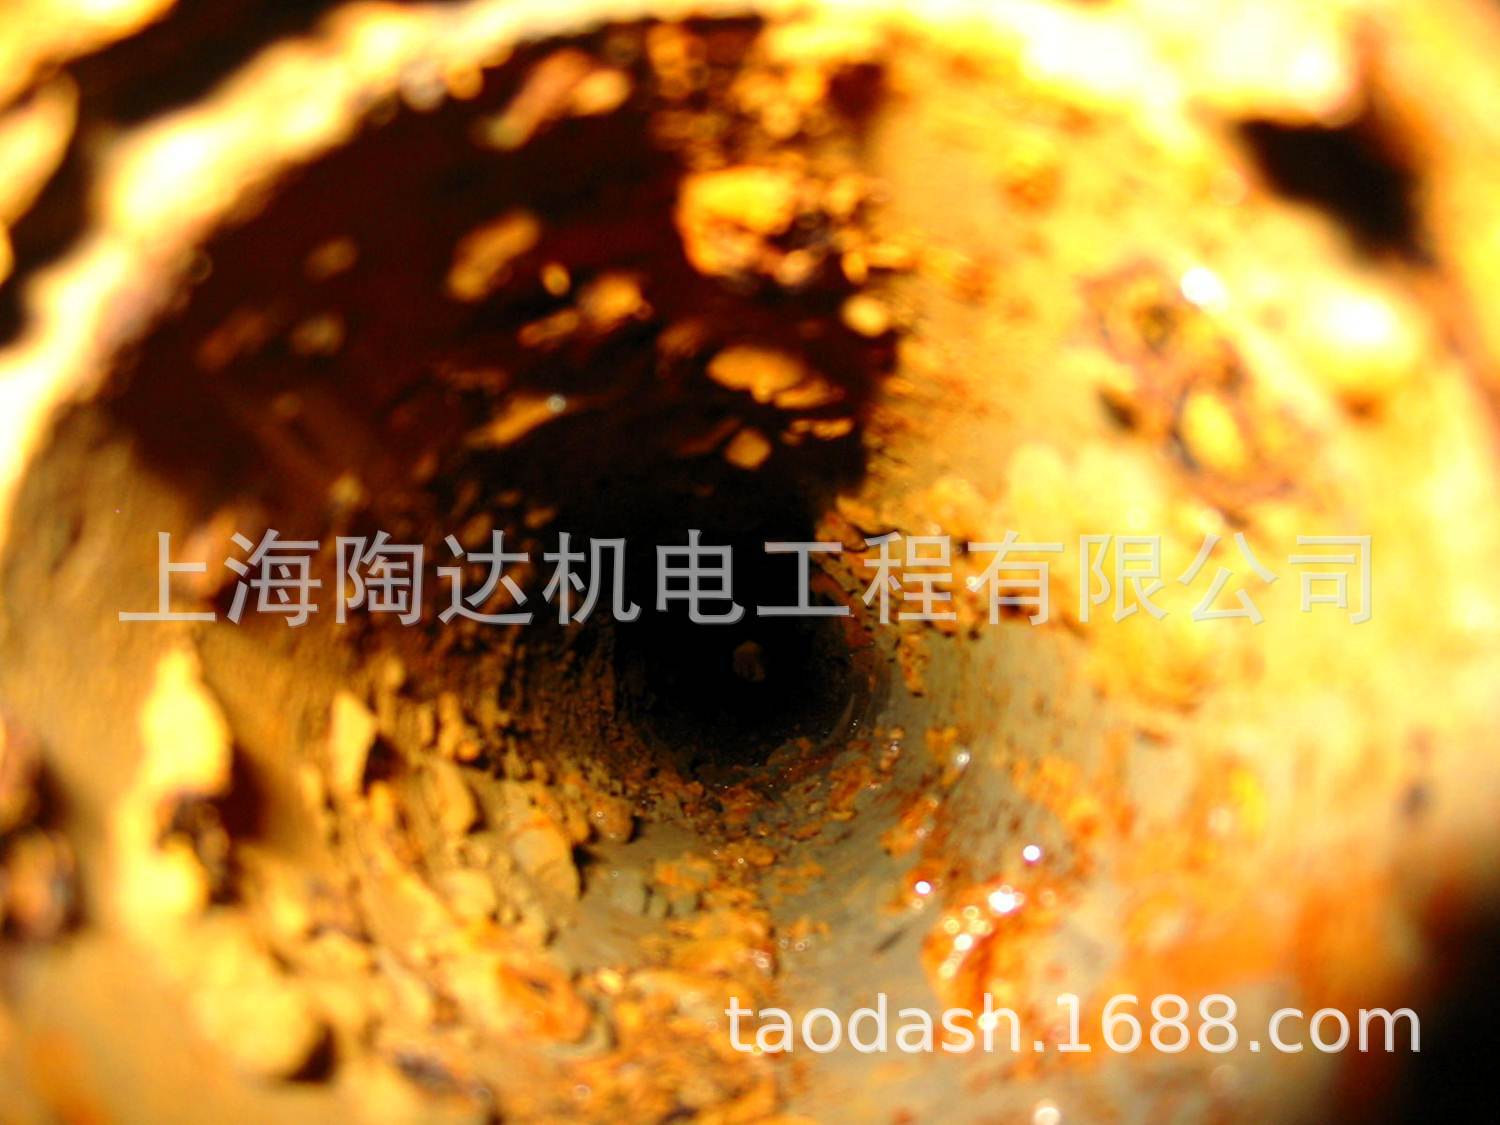 上海电子除垢仪  上海电子水处理器 厂家直销电子除垢仪 杀菌灭澡示例图7